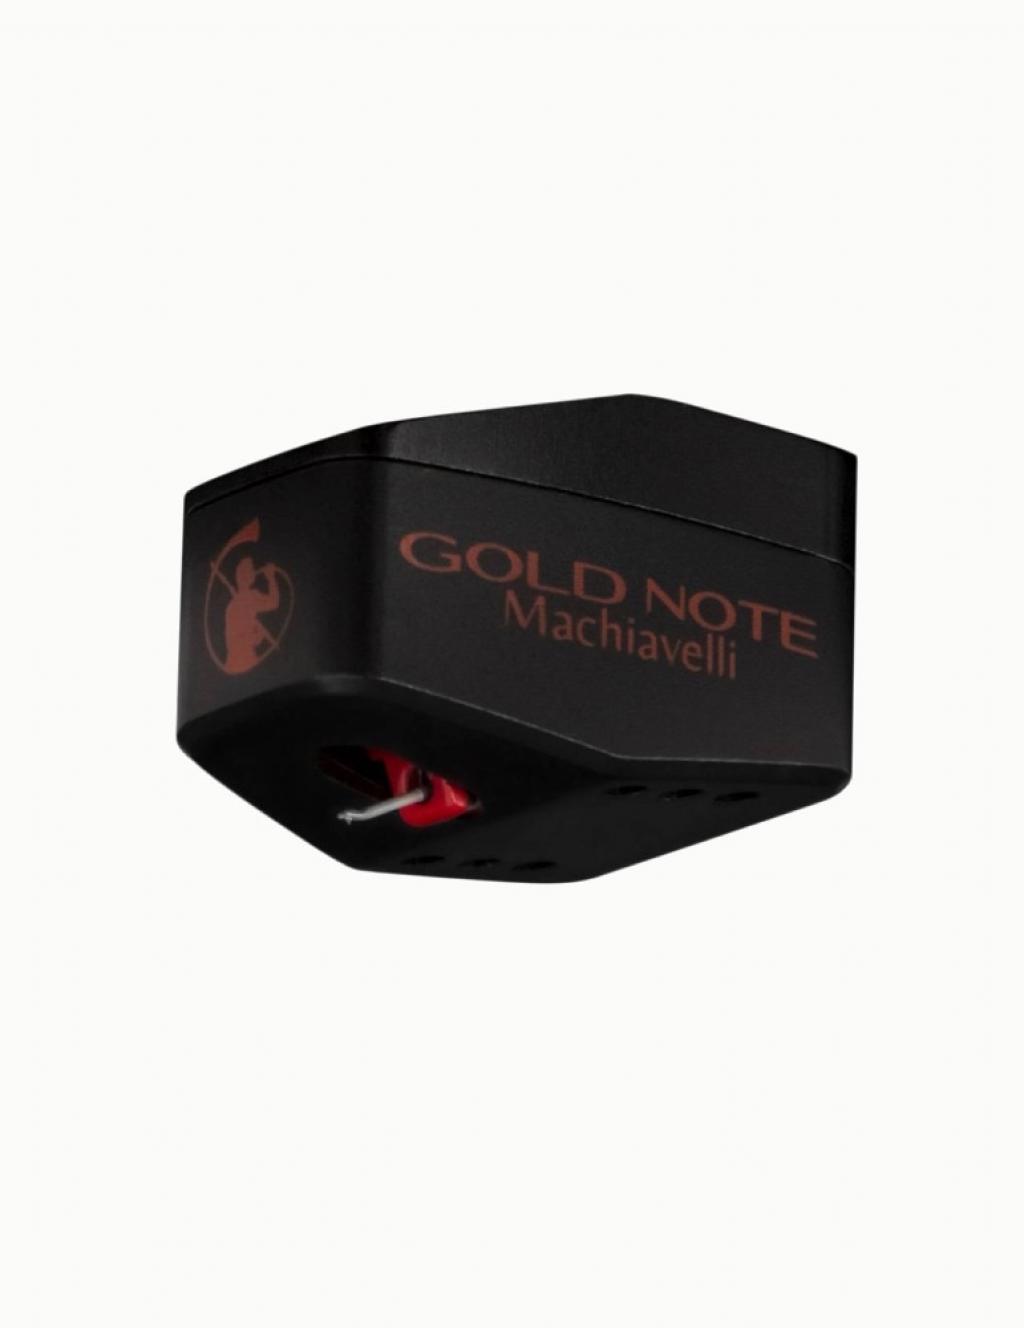 Doza MC Gold Note Machiavelli MK2 Red